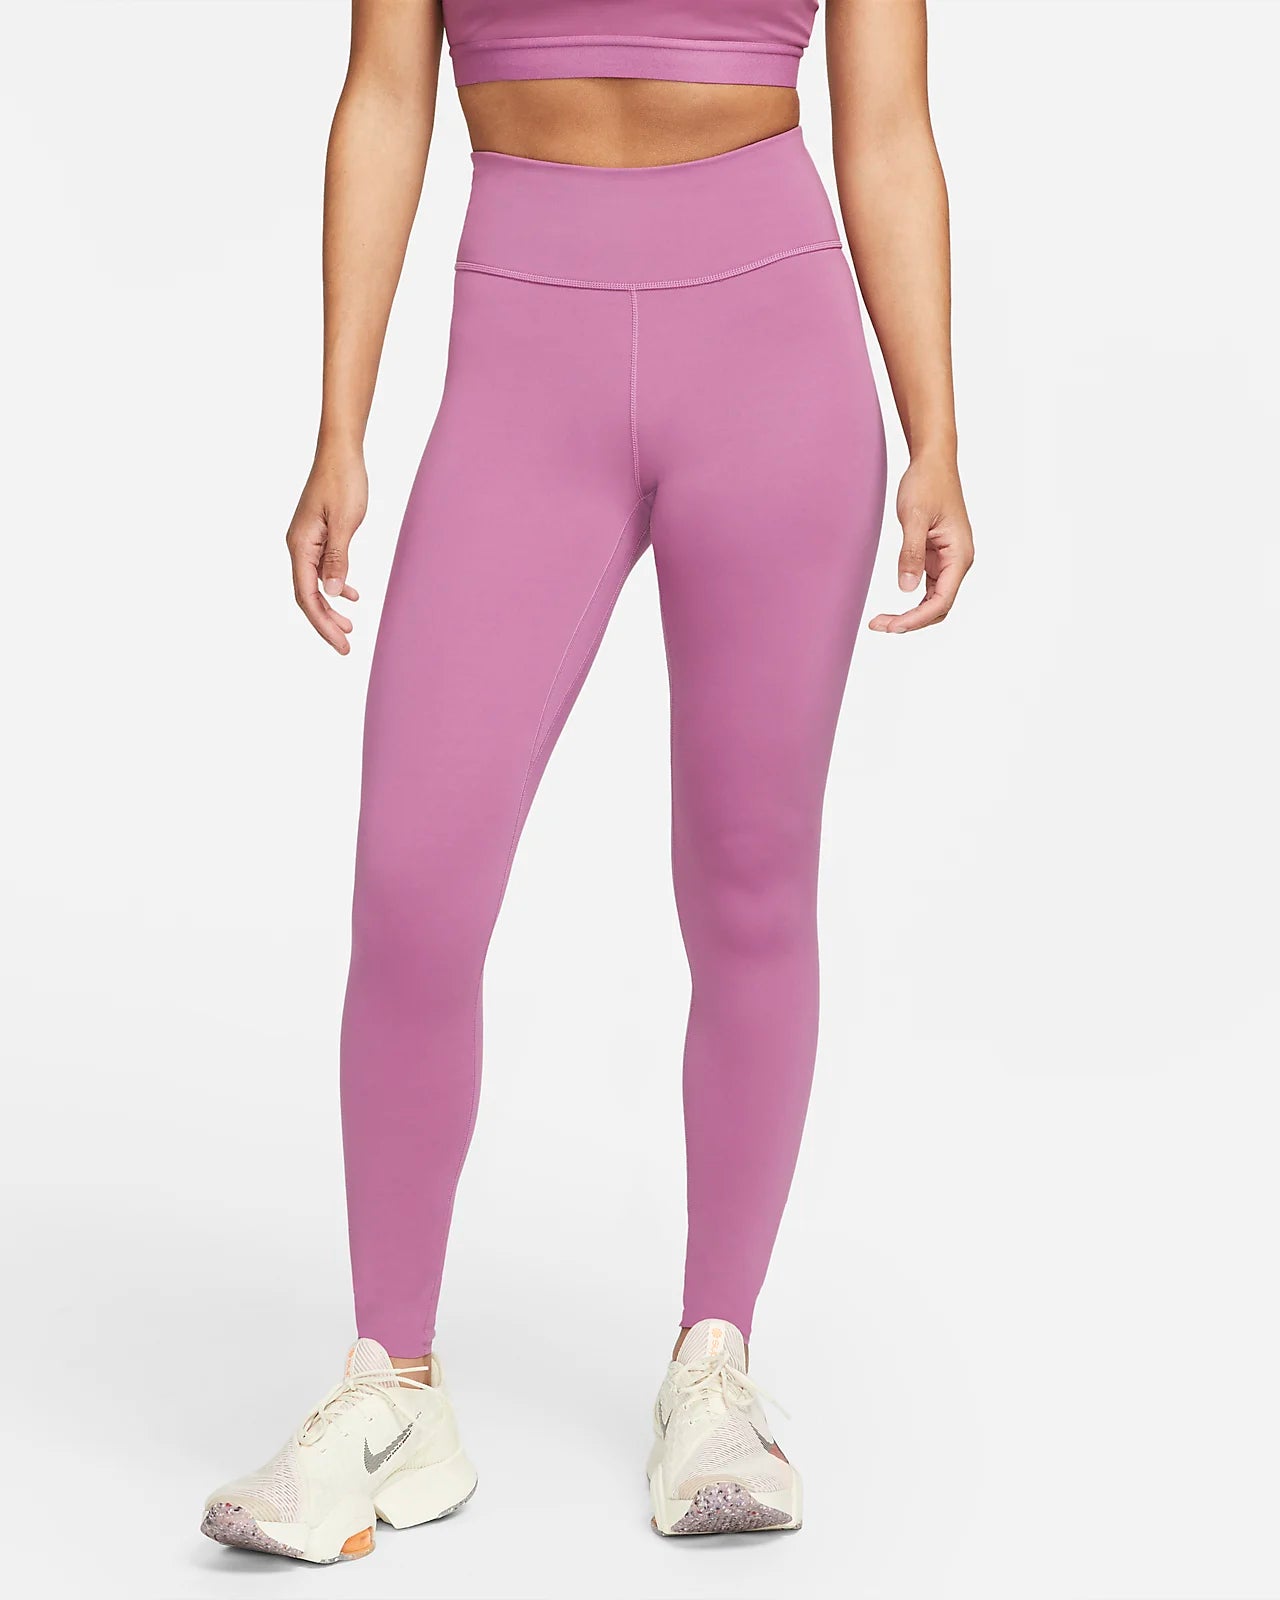 Nike Women’s One Luxe Leggings - Pink